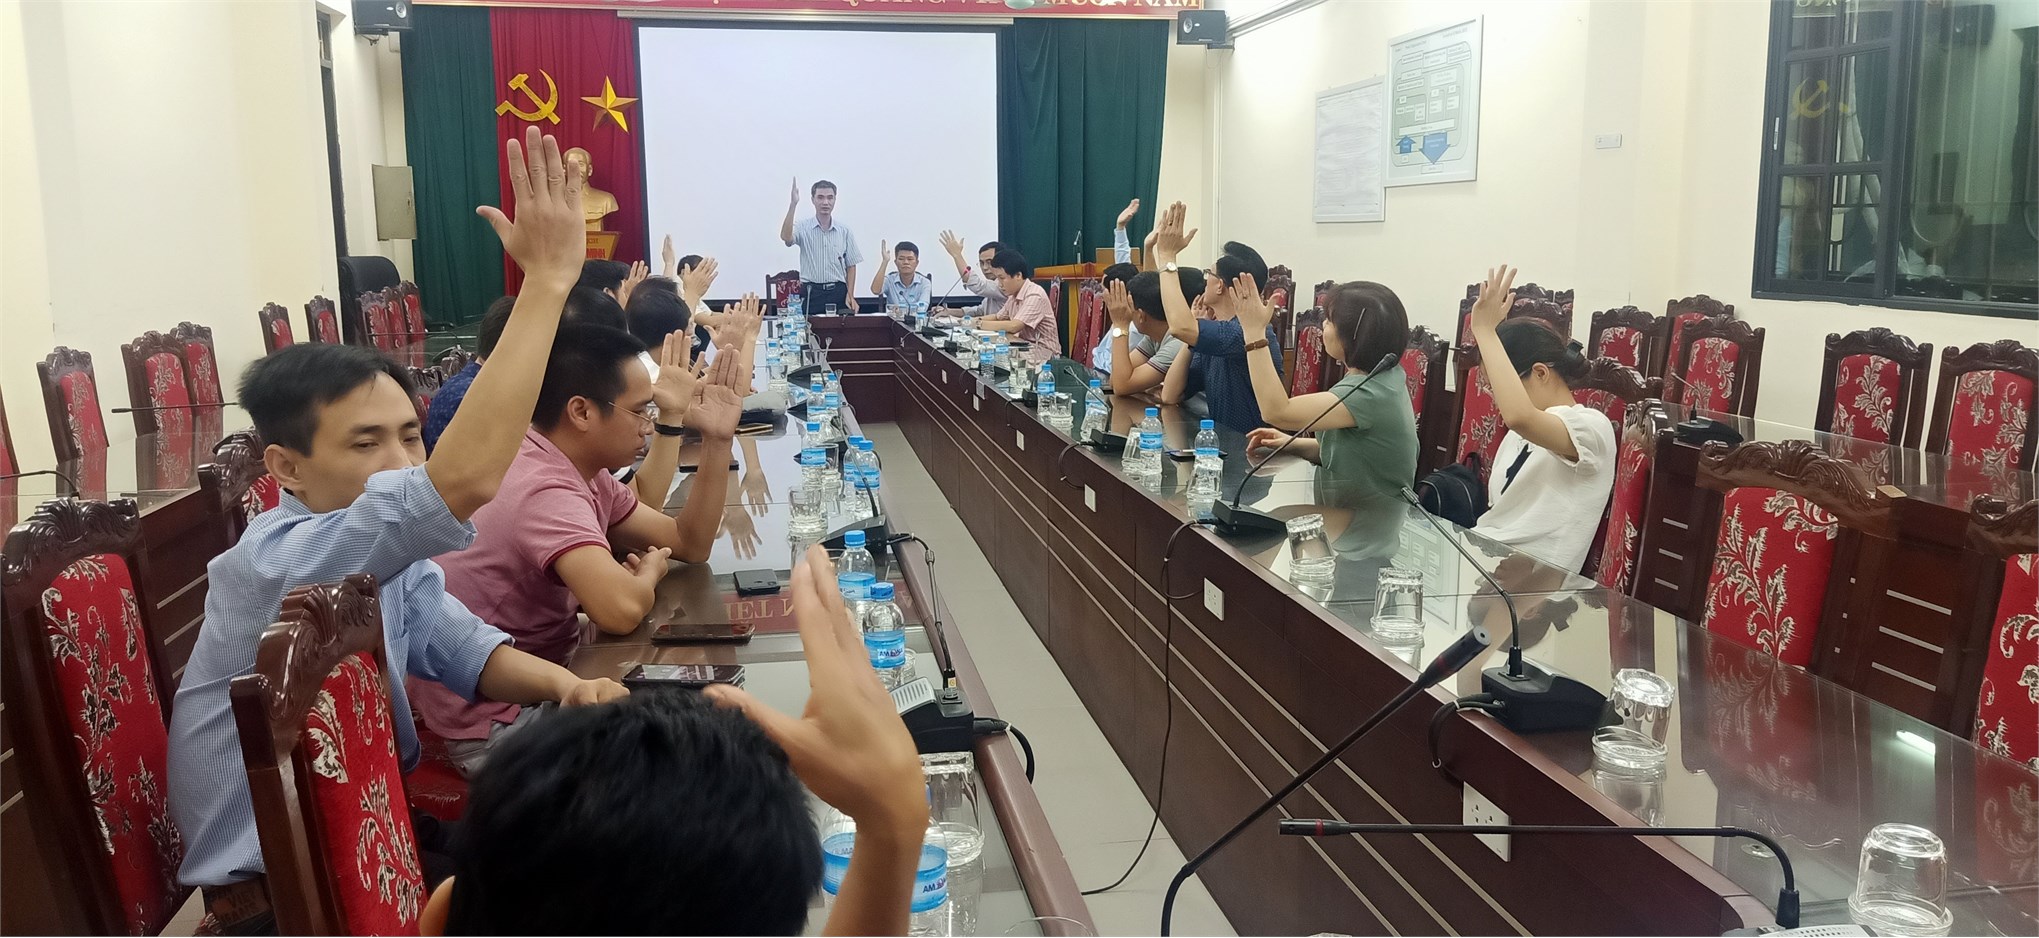 Hội nghị công chức viên chức năm học 2019 - 2020 của TT Việt Nhật